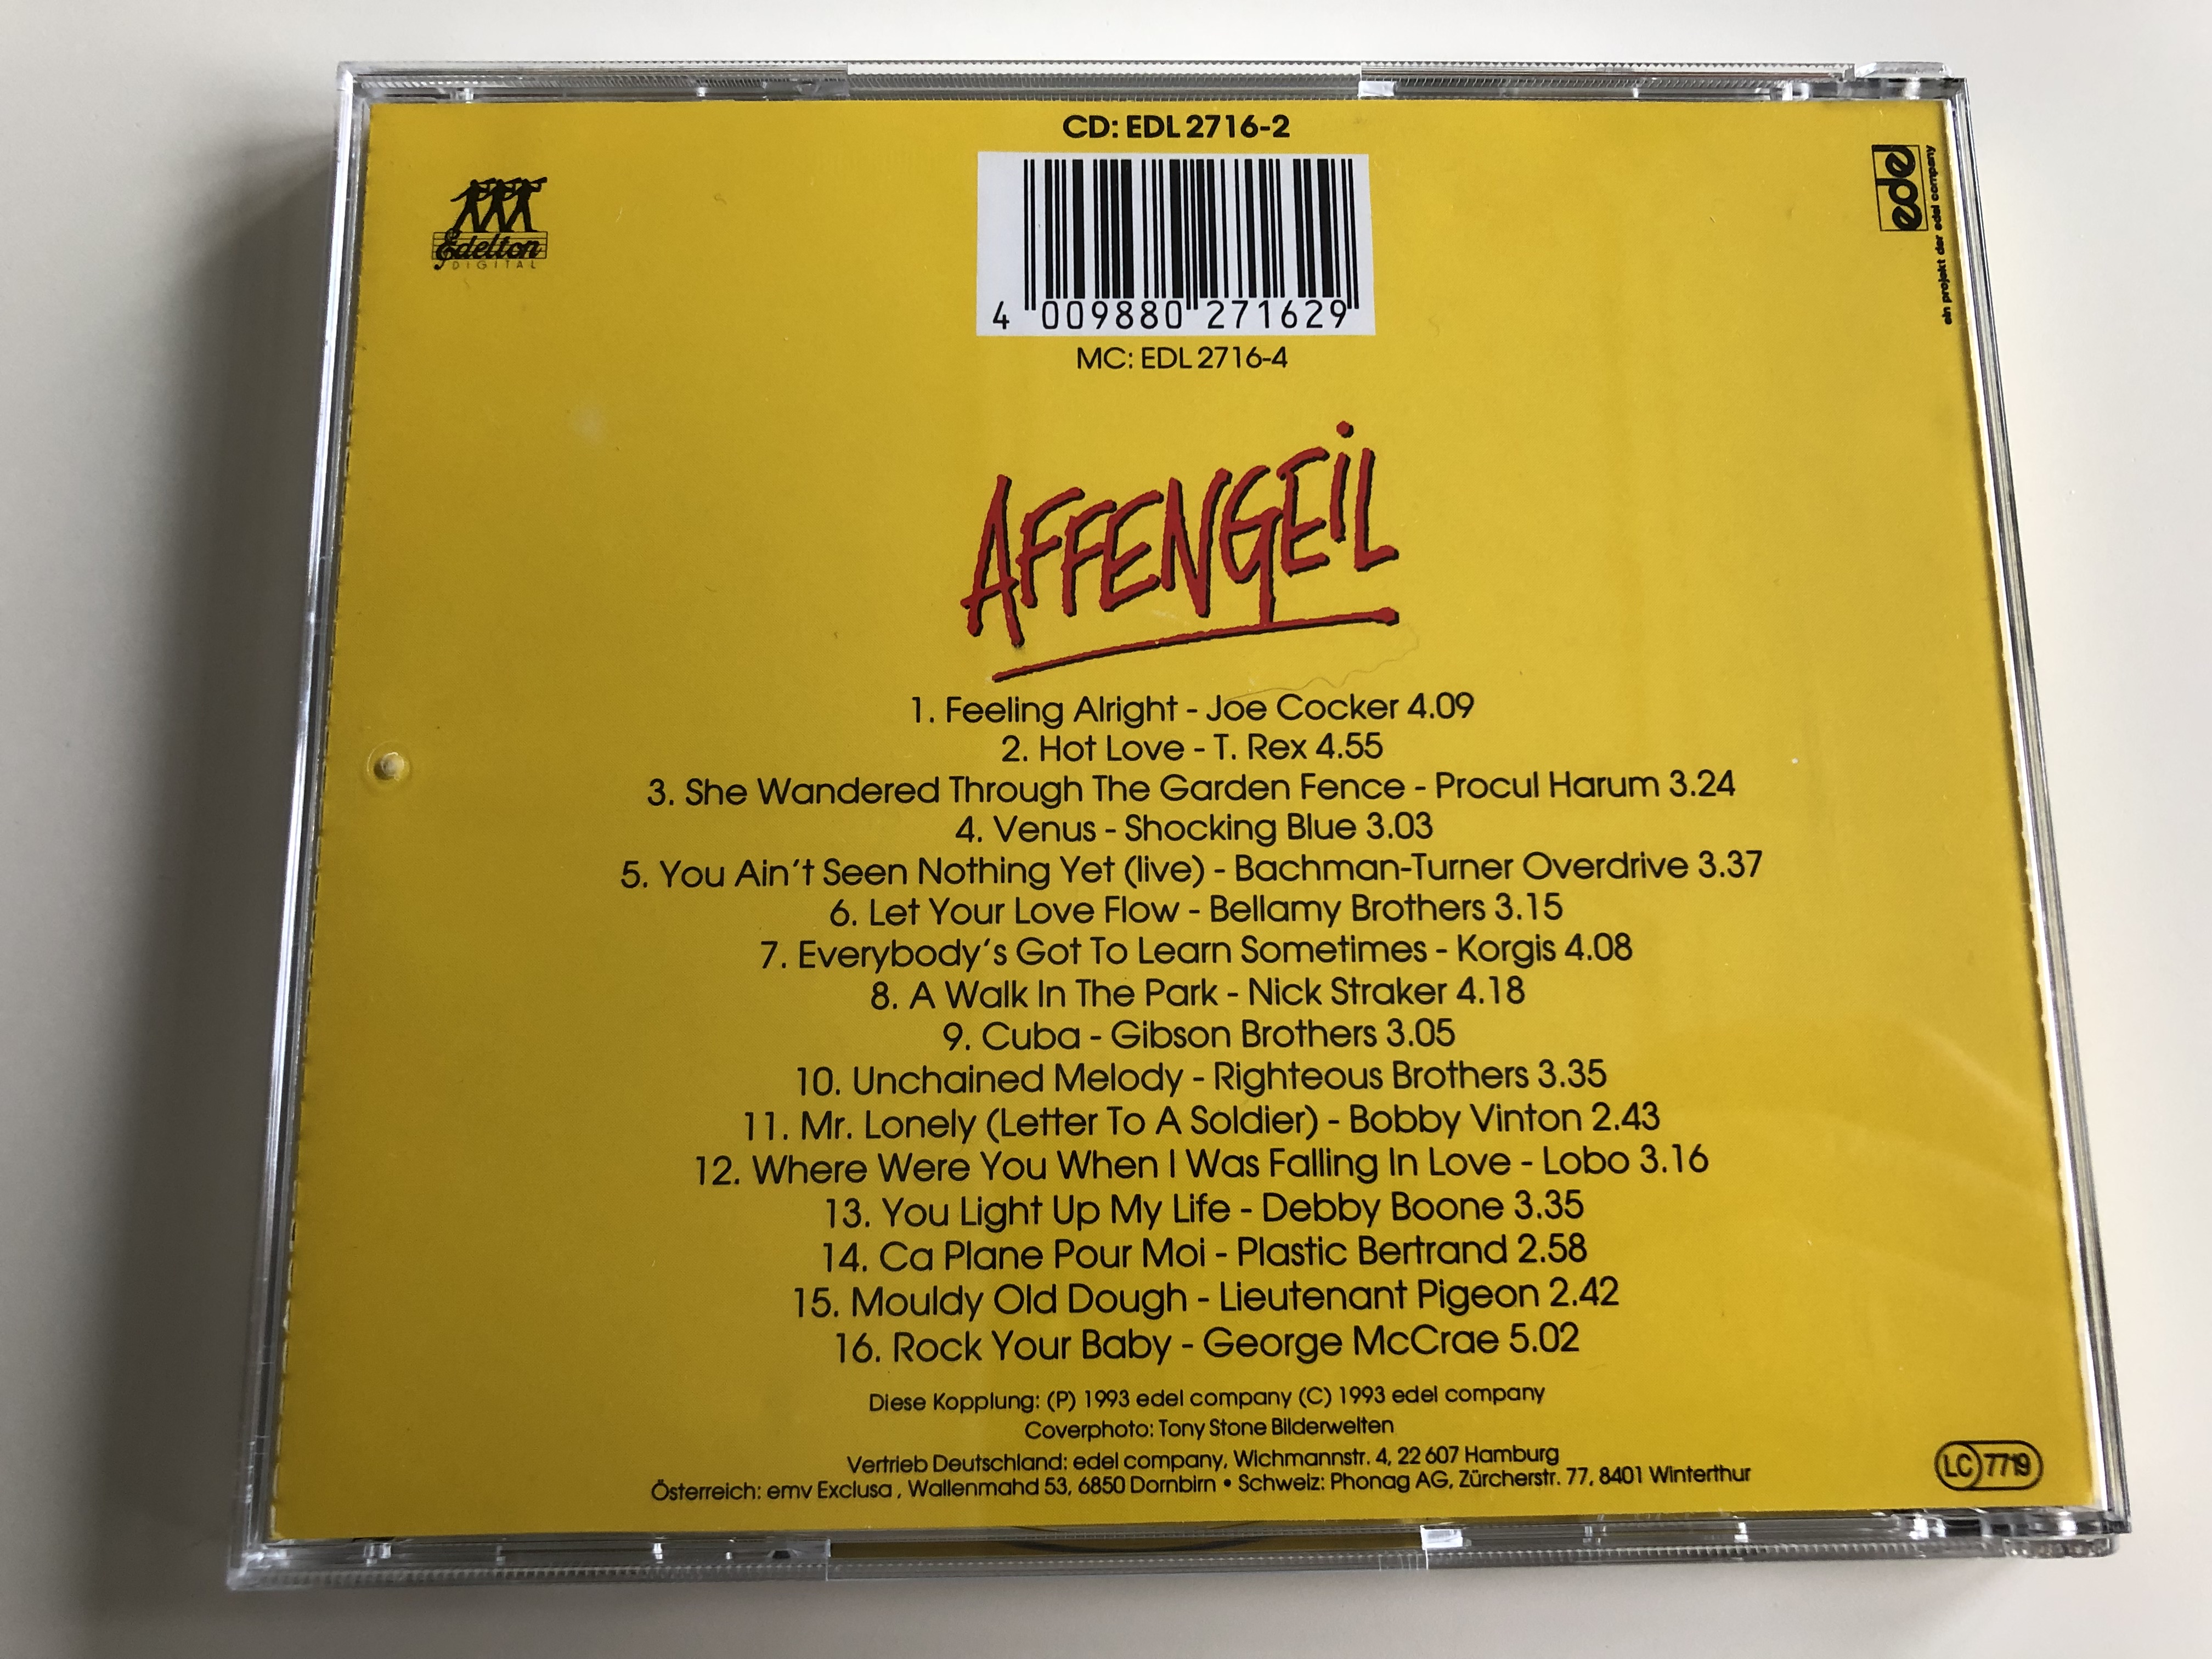 affengeil-16-superstarke-oldies-aus-der-tv-werbung-audio-cd-1993-edl2716-2-4-.jpg